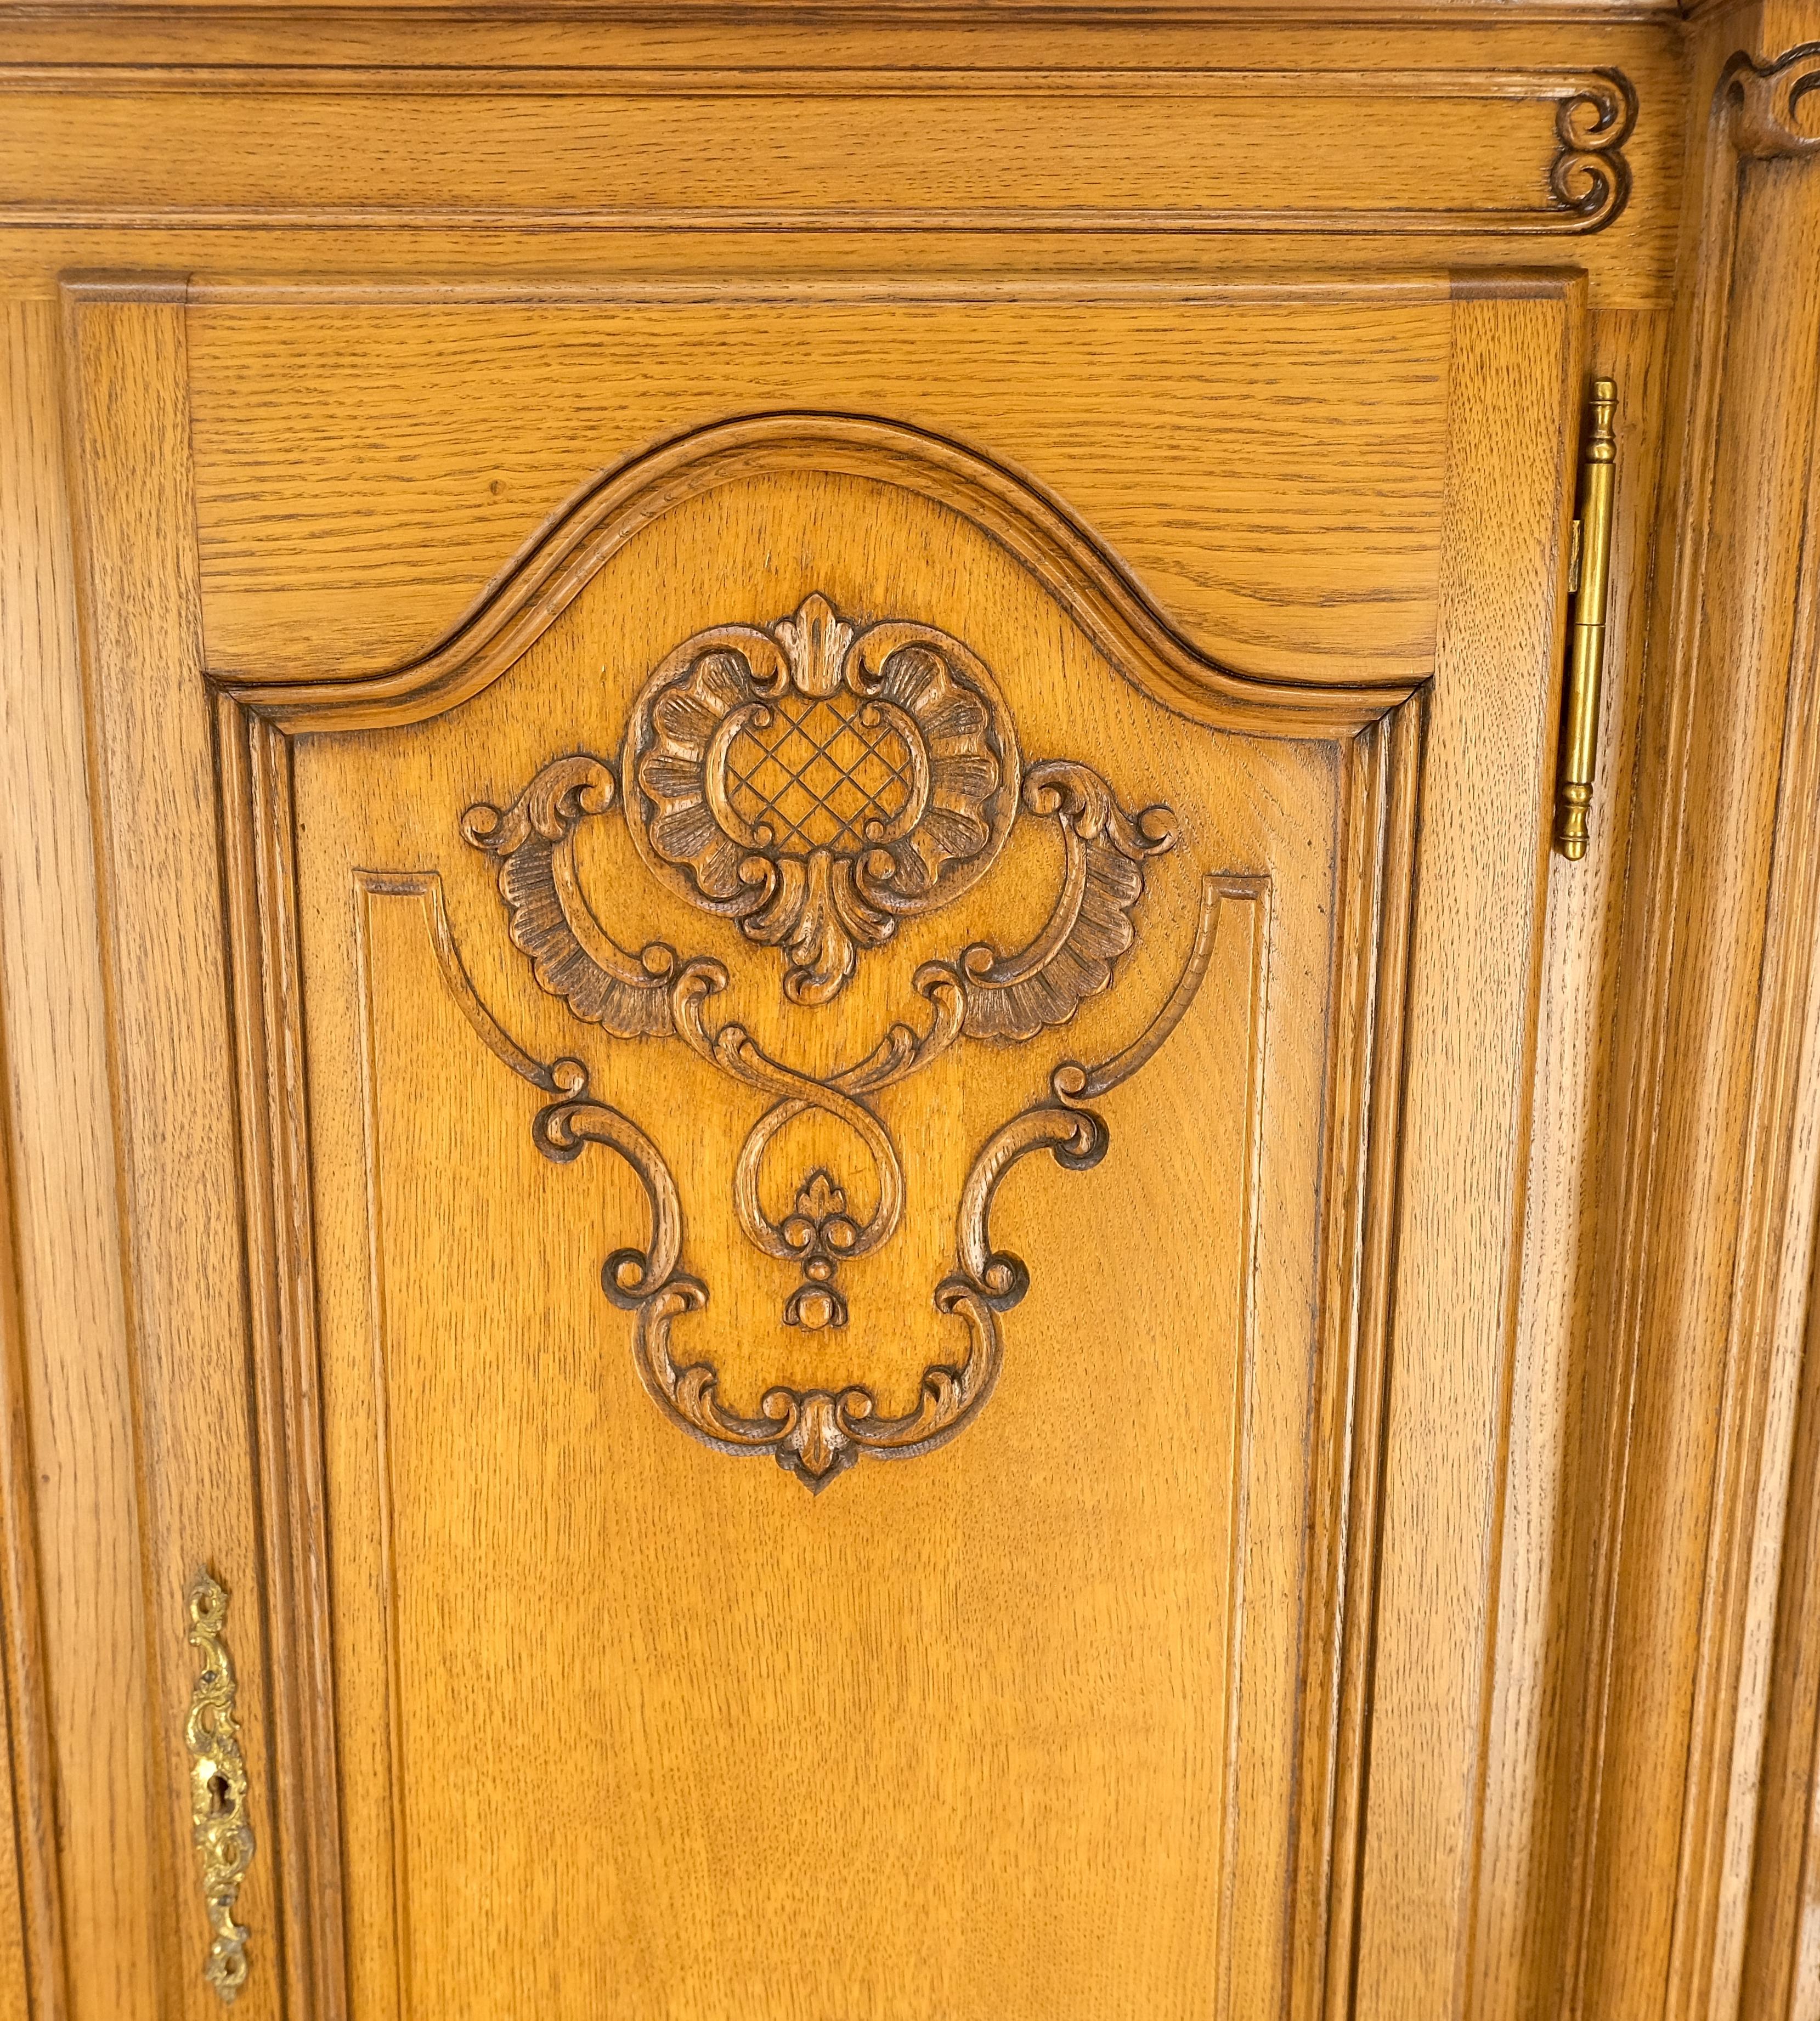 Regency Revival Carved Oak Oversize 5 Doors Long Credenza Cabinet Sideboard w/ Shelves Drawer  For Sale